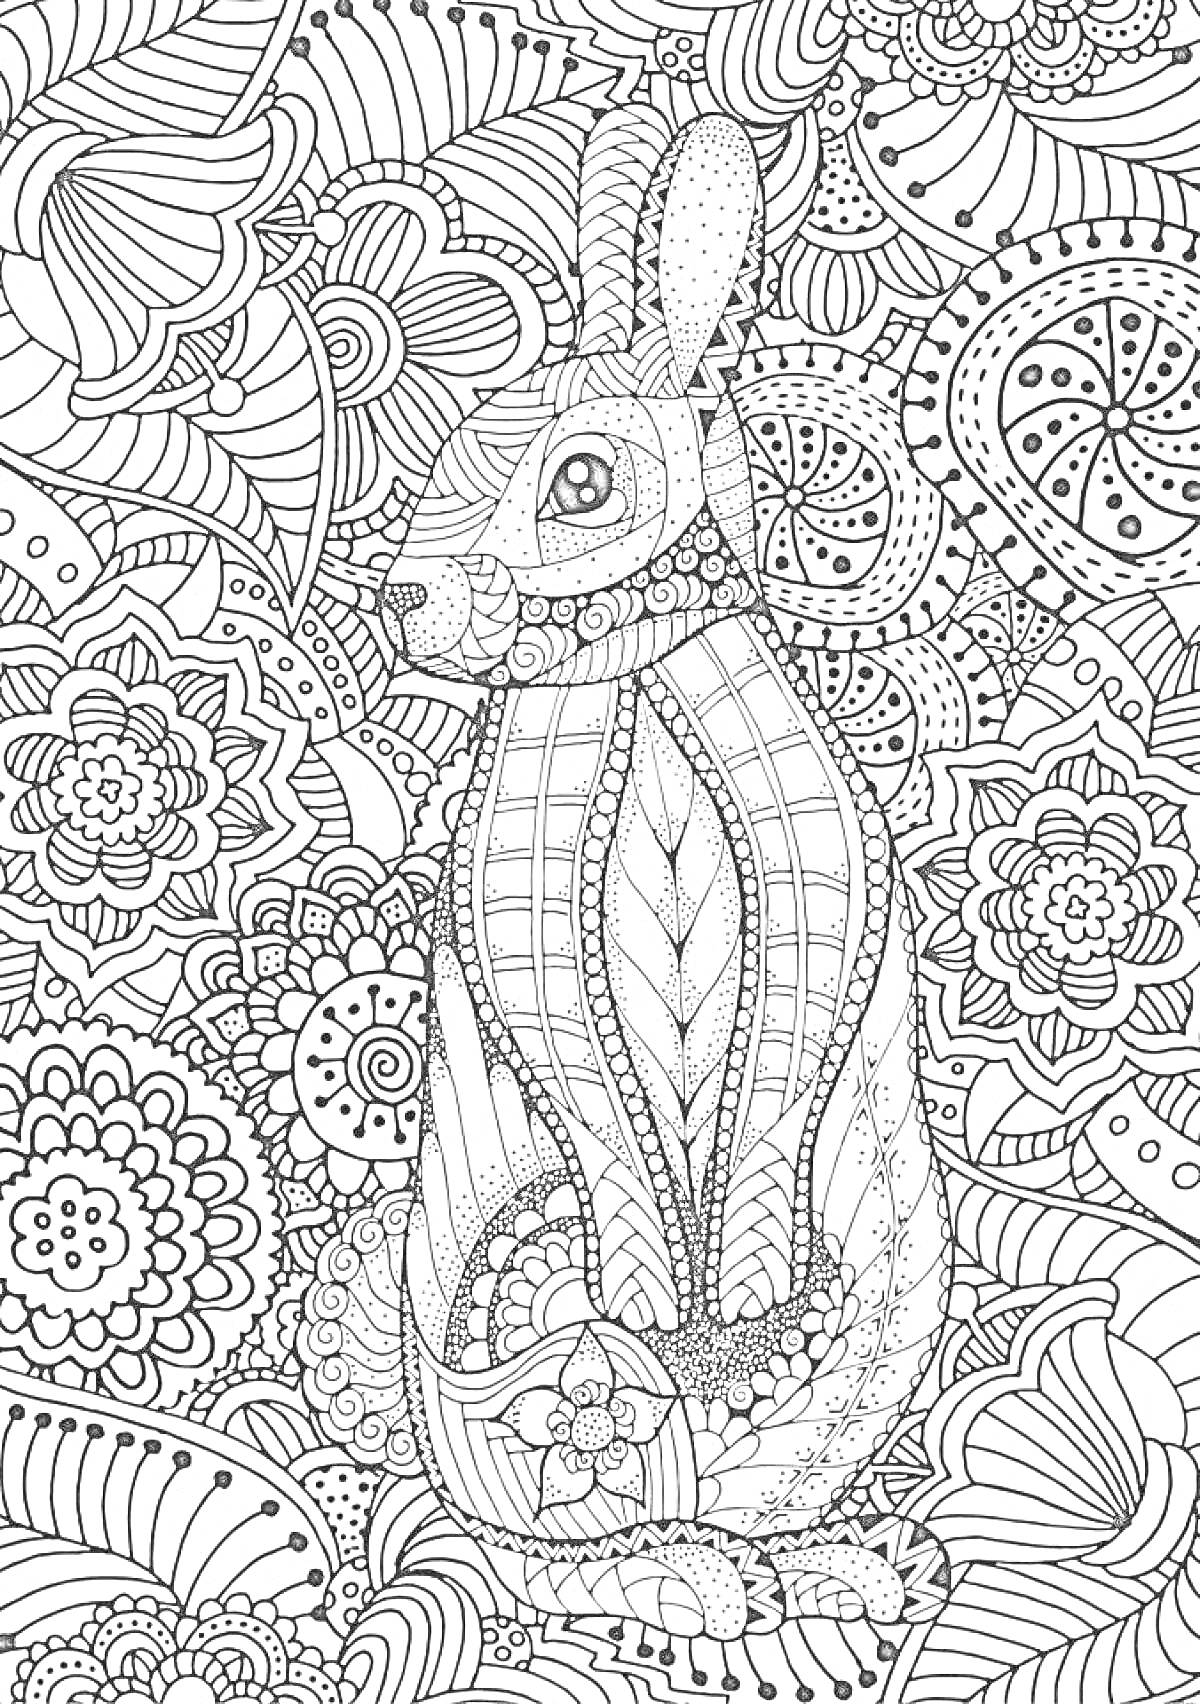 Раскраска Раскраска-антистресс с кроликом и цветочными узорами